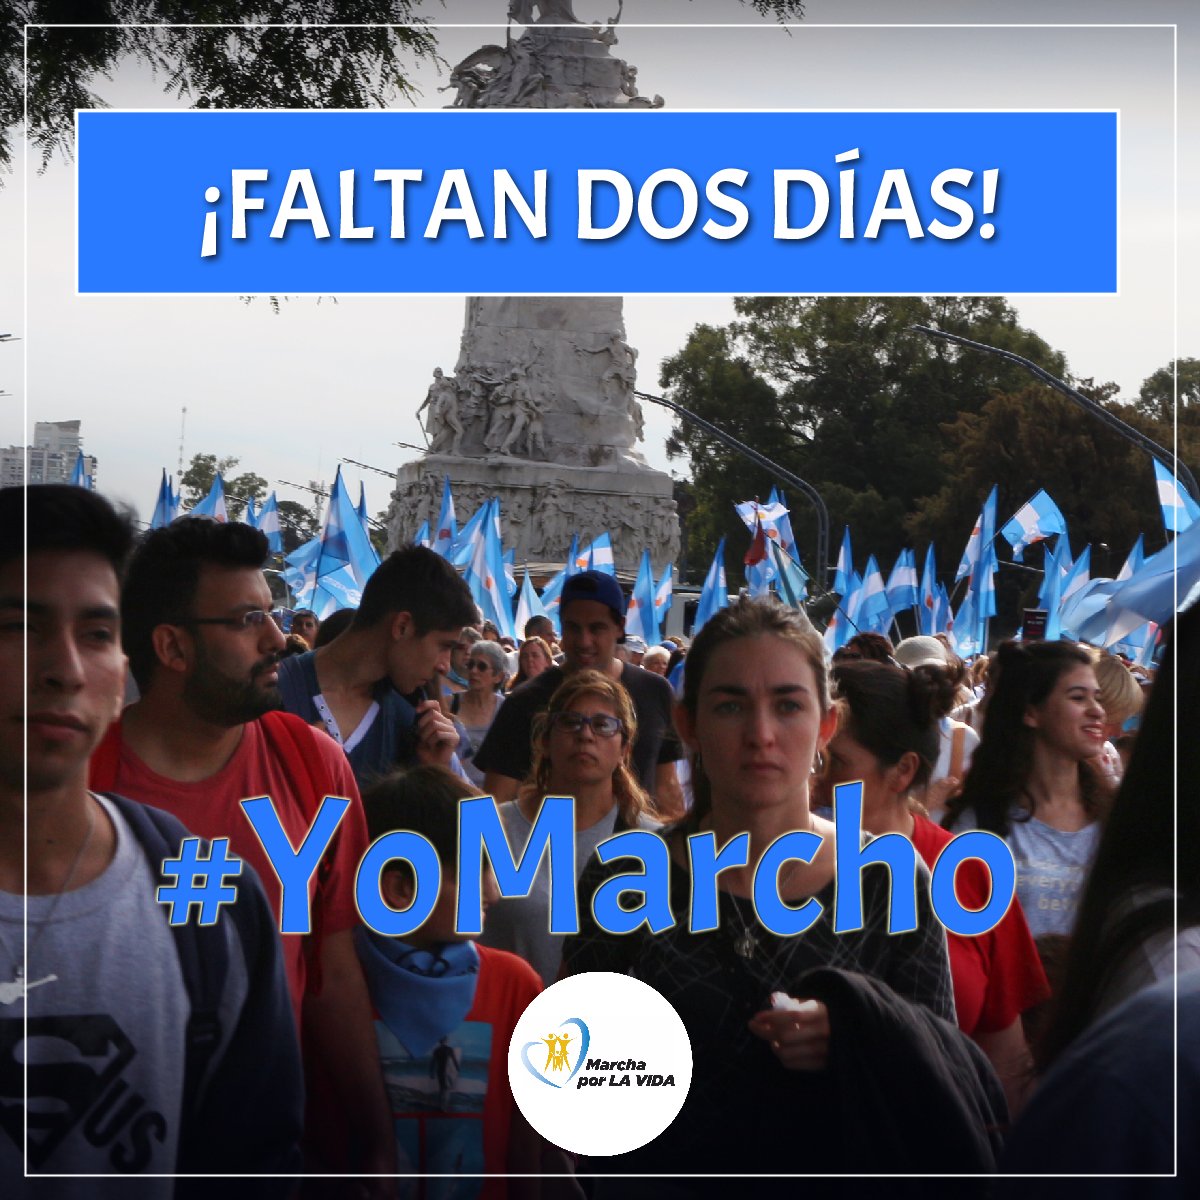 Estamos preparados!! Vení a defender la vida. Veni a celebrar el Día del niño por nacer. #25M #YoMarcho #ArgentinaSinAborto
#FrenemosElAborto @providatubers @providadexvida @EWTNespanol @aciprensa @aciera_arg @FrenteJovenAR @AmelieGranata @AbogadosVida